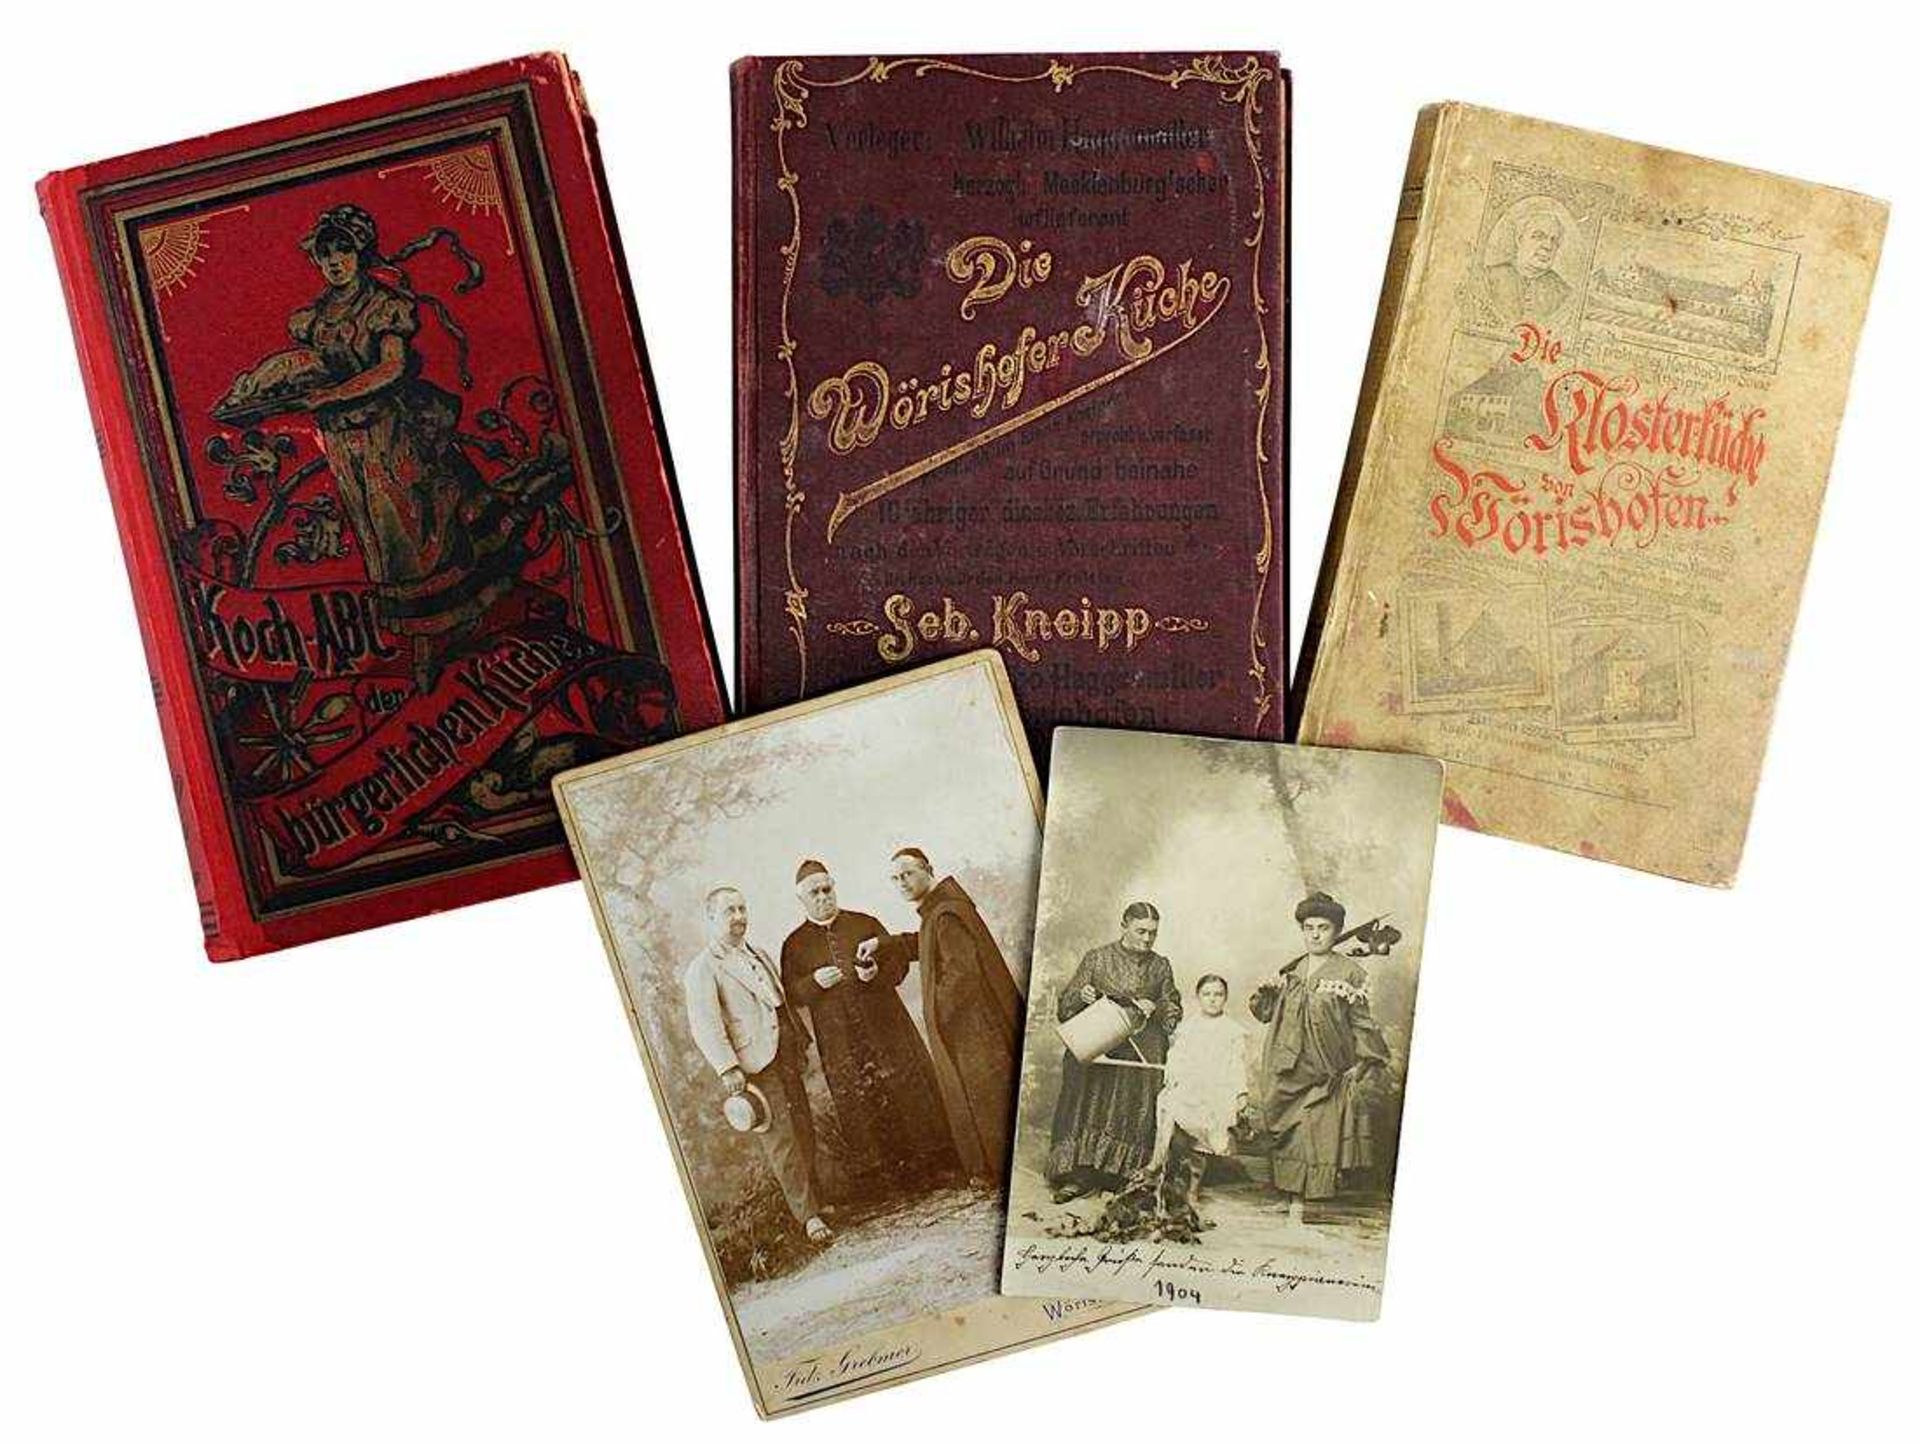 Drei Kochbücher, 1892 bis 1900, dazu 2 Photographien: Die Klosterküche von Wörishofen - ein